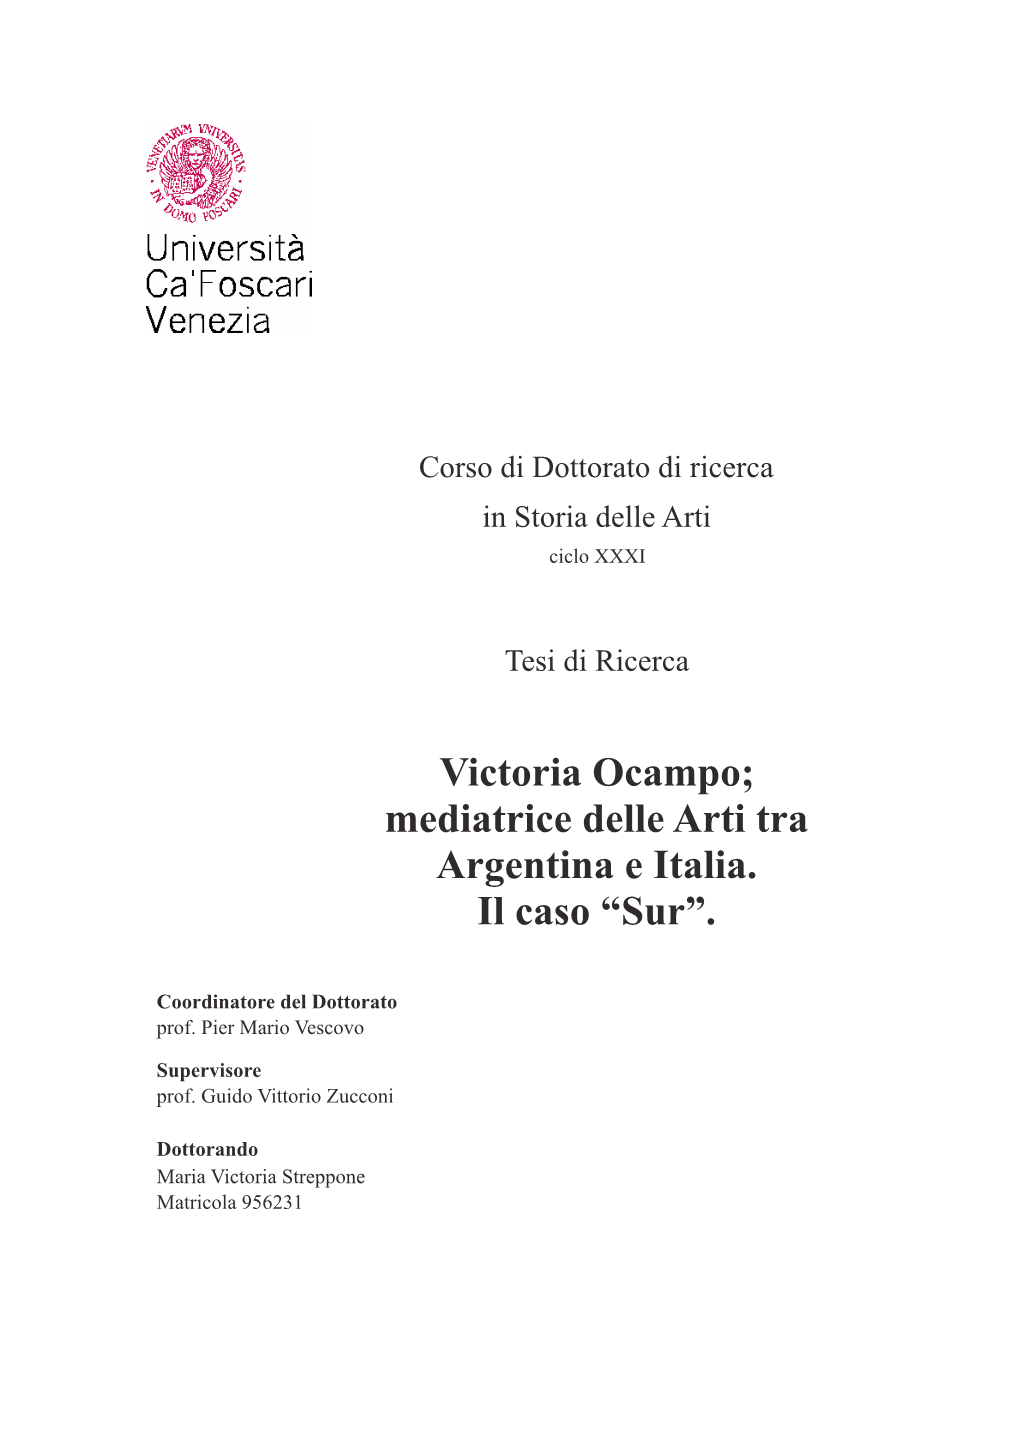 Victoria Ocampo; Mediatrice Delle Arti Tra Argentina E Italia. Il Caso “Sur”